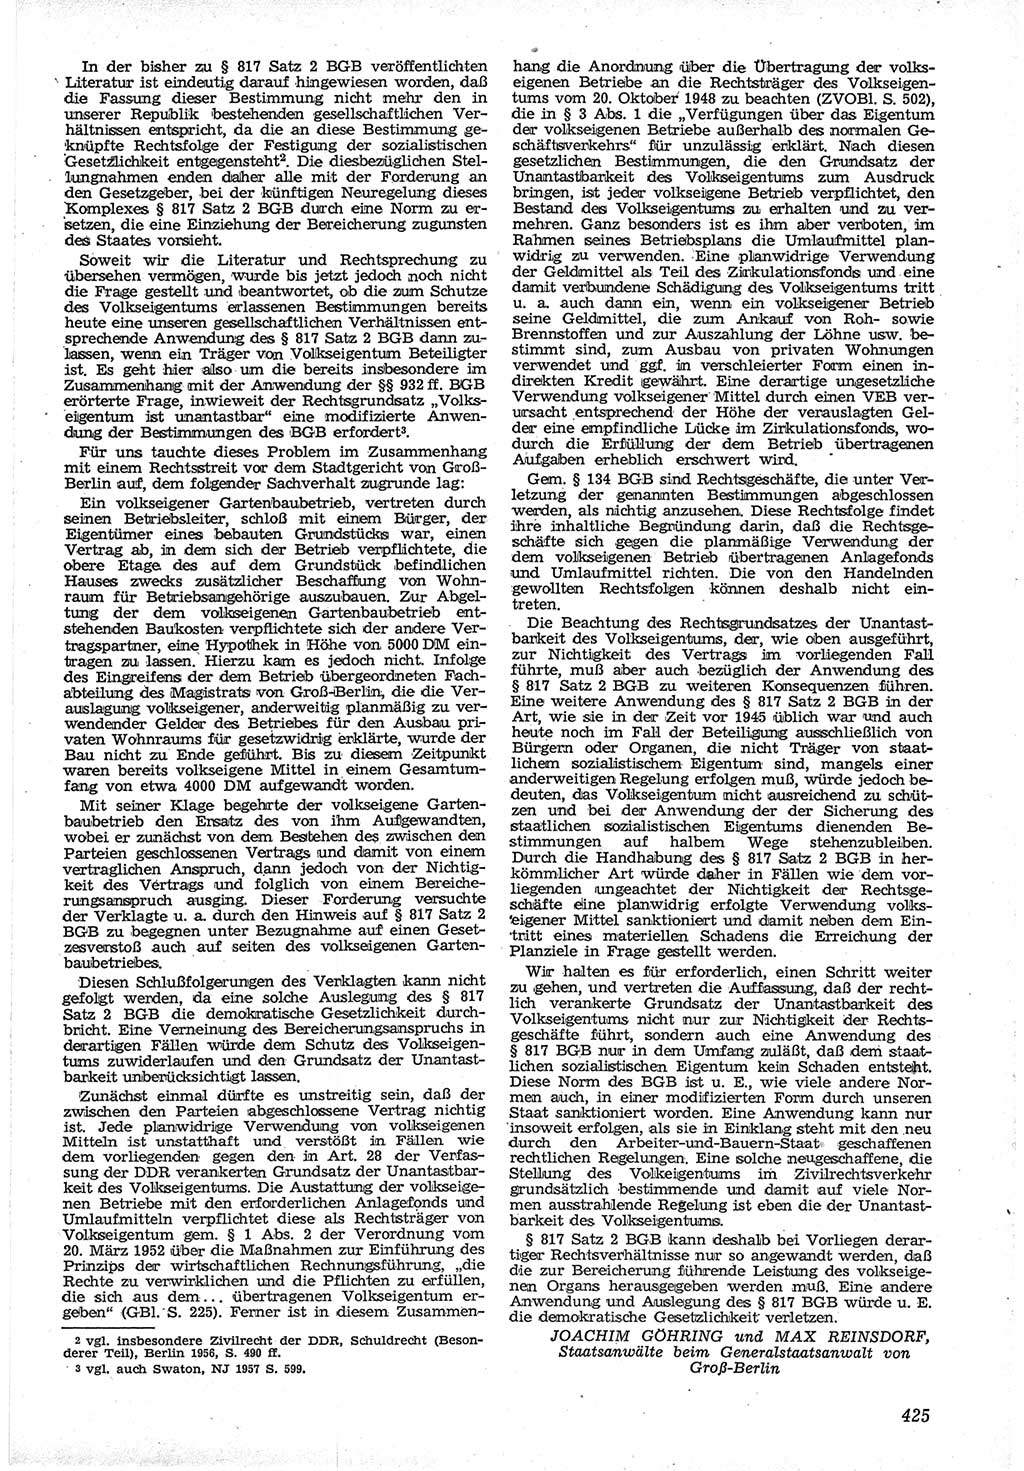 Neue Justiz (NJ), Zeitschrift für Recht und Rechtswissenschaft [Deutsche Demokratische Republik (DDR)], 12. Jahrgang 1958, Seite 425 (NJ DDR 1958, S. 425)